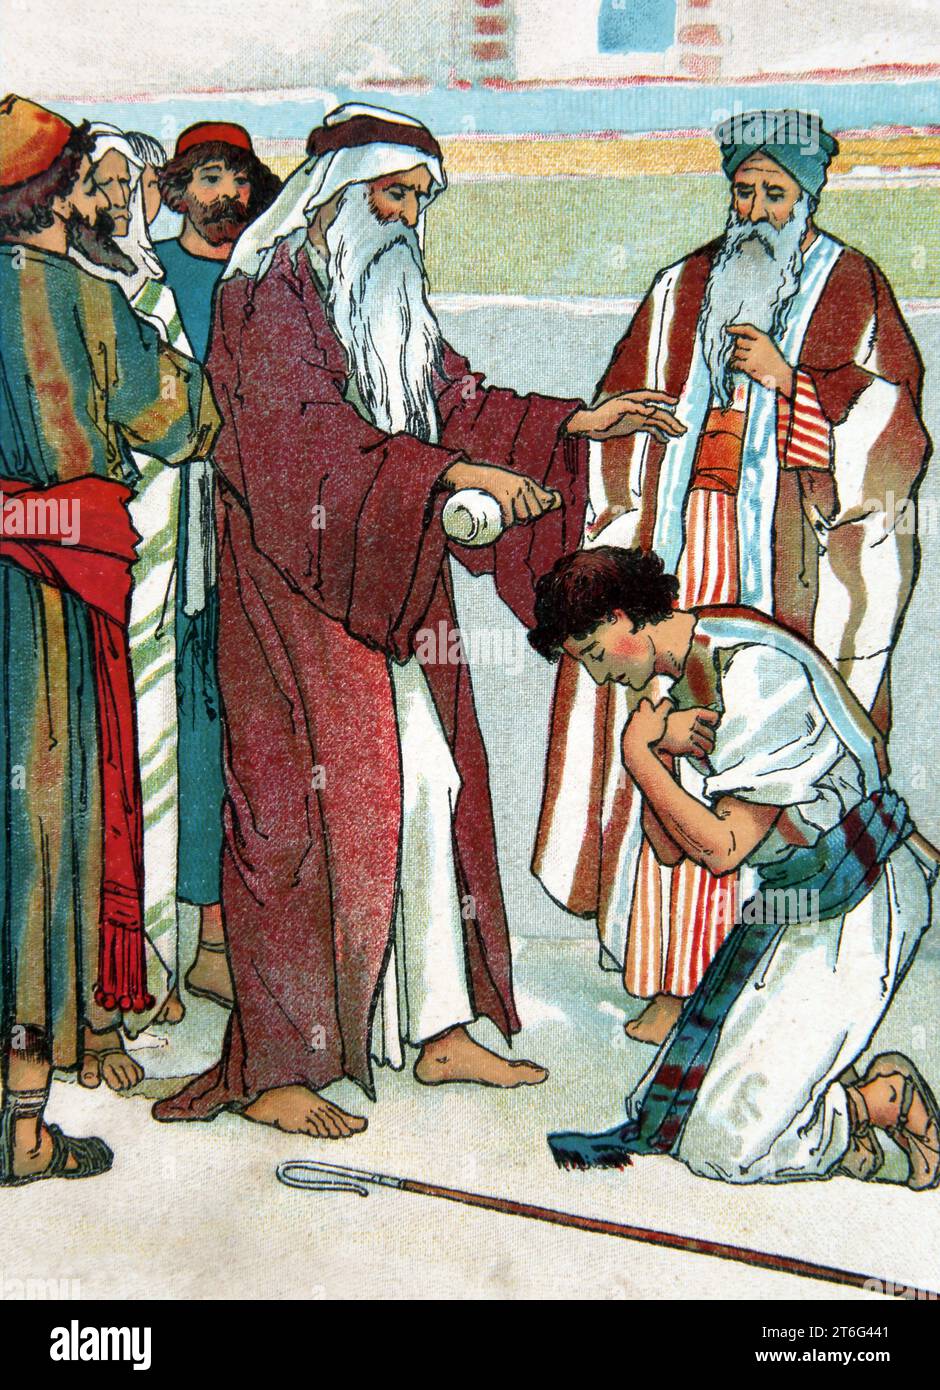 Illustration du Prophète Samuel oint David pour être roi sur Israël (I Samuel 16.13) du Livre des enfants l'histoire de David Banque D'Images